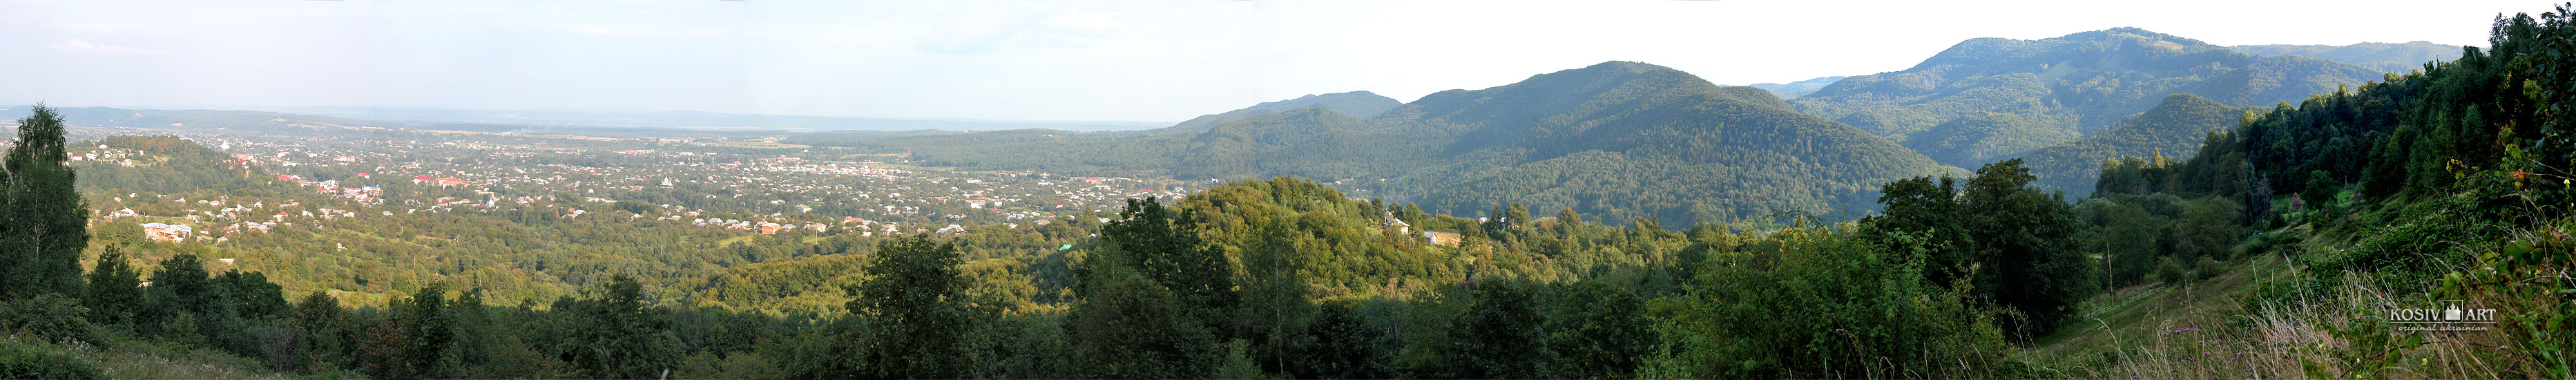 View on Kosiv from Sopka mountain